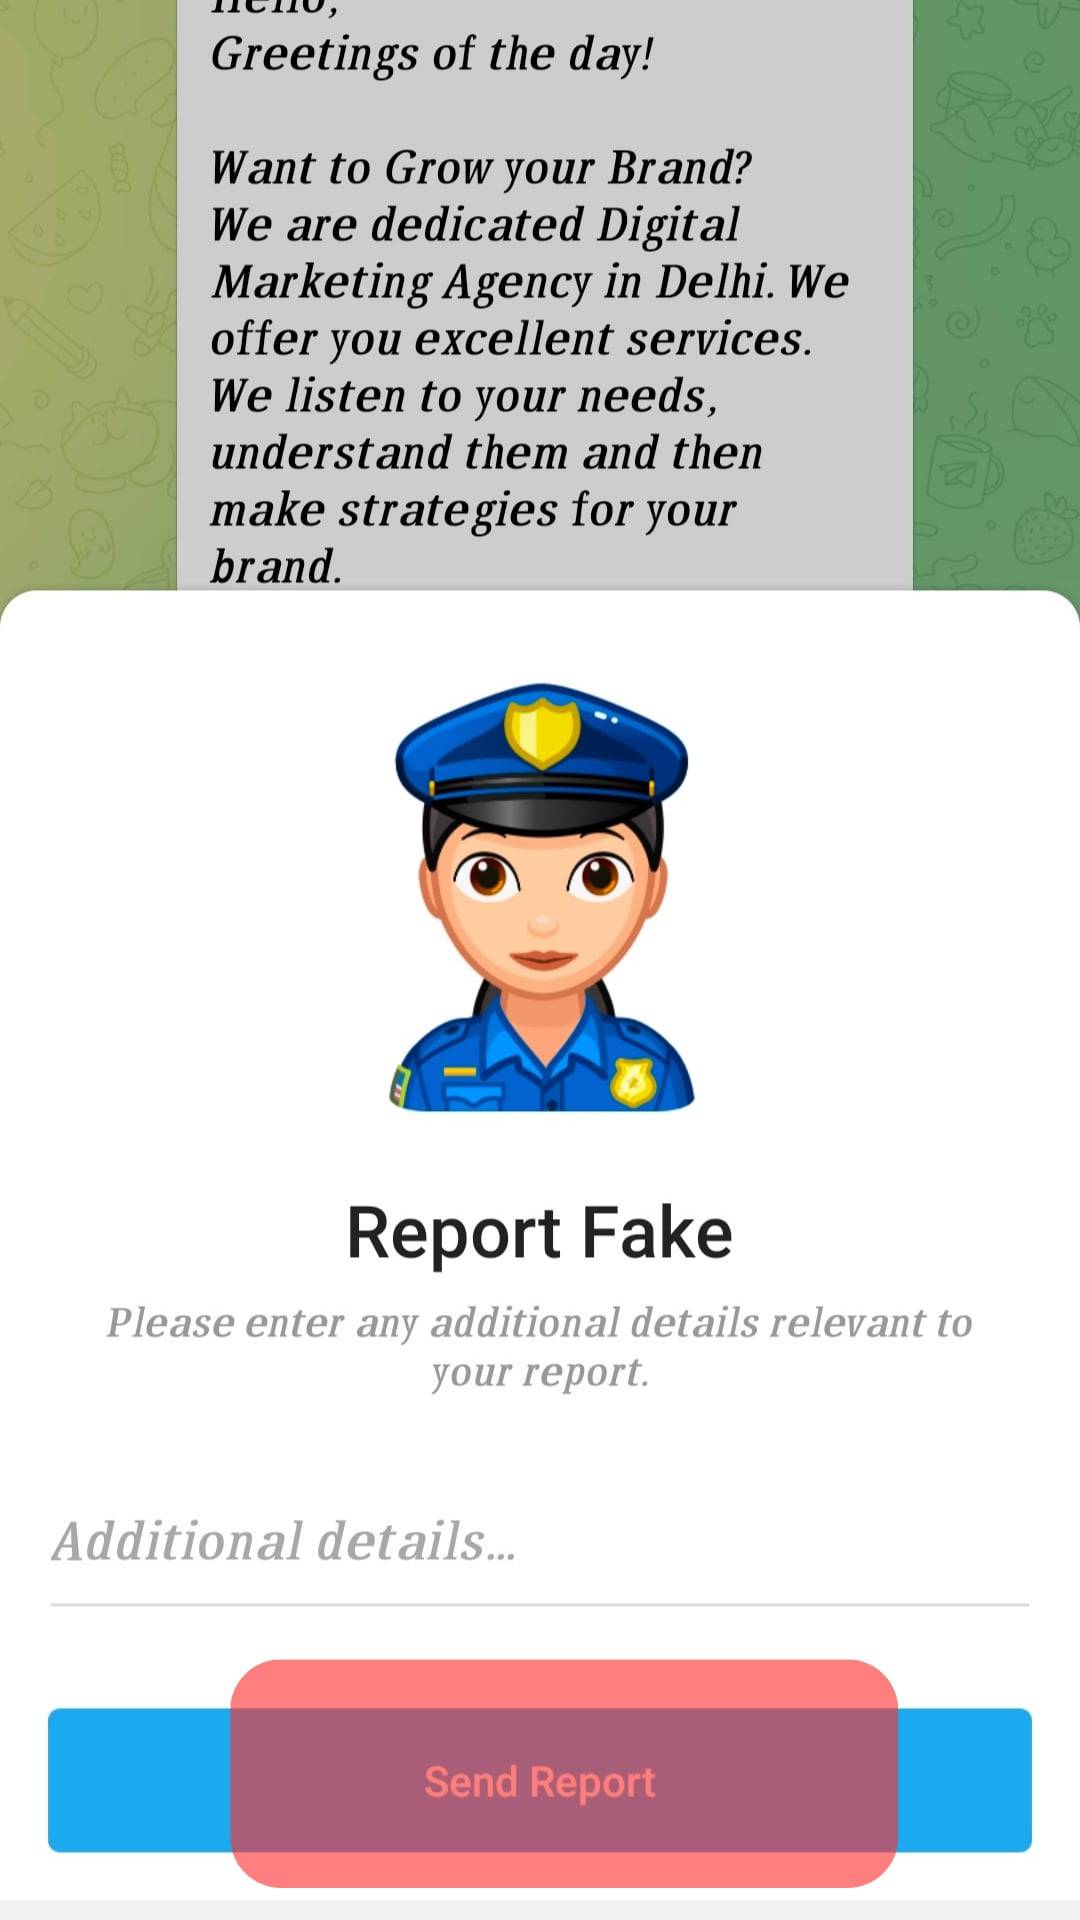 Tap Send Report